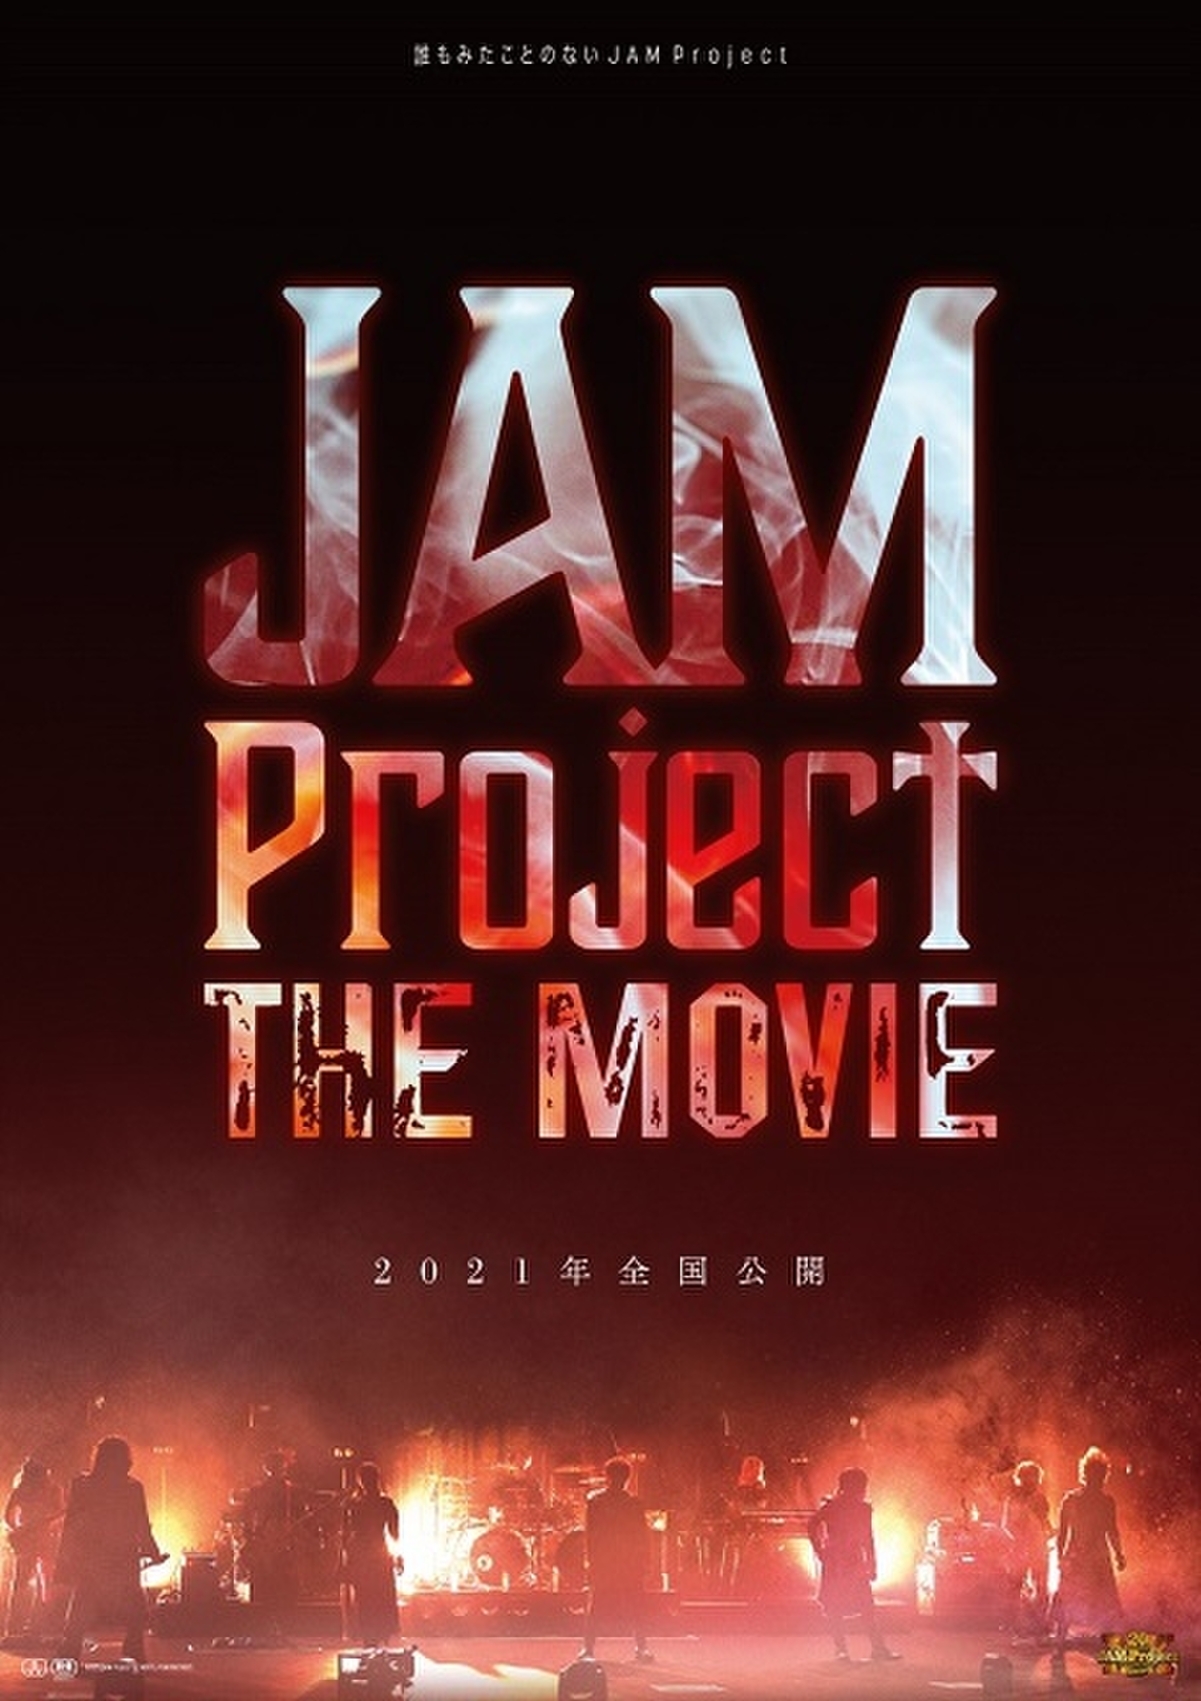 アニソン音楽ユニット Jam Project のドキュメンタリー映画 21年公開 コロナ禍の現状も描く 映画ニュース 映画 Com